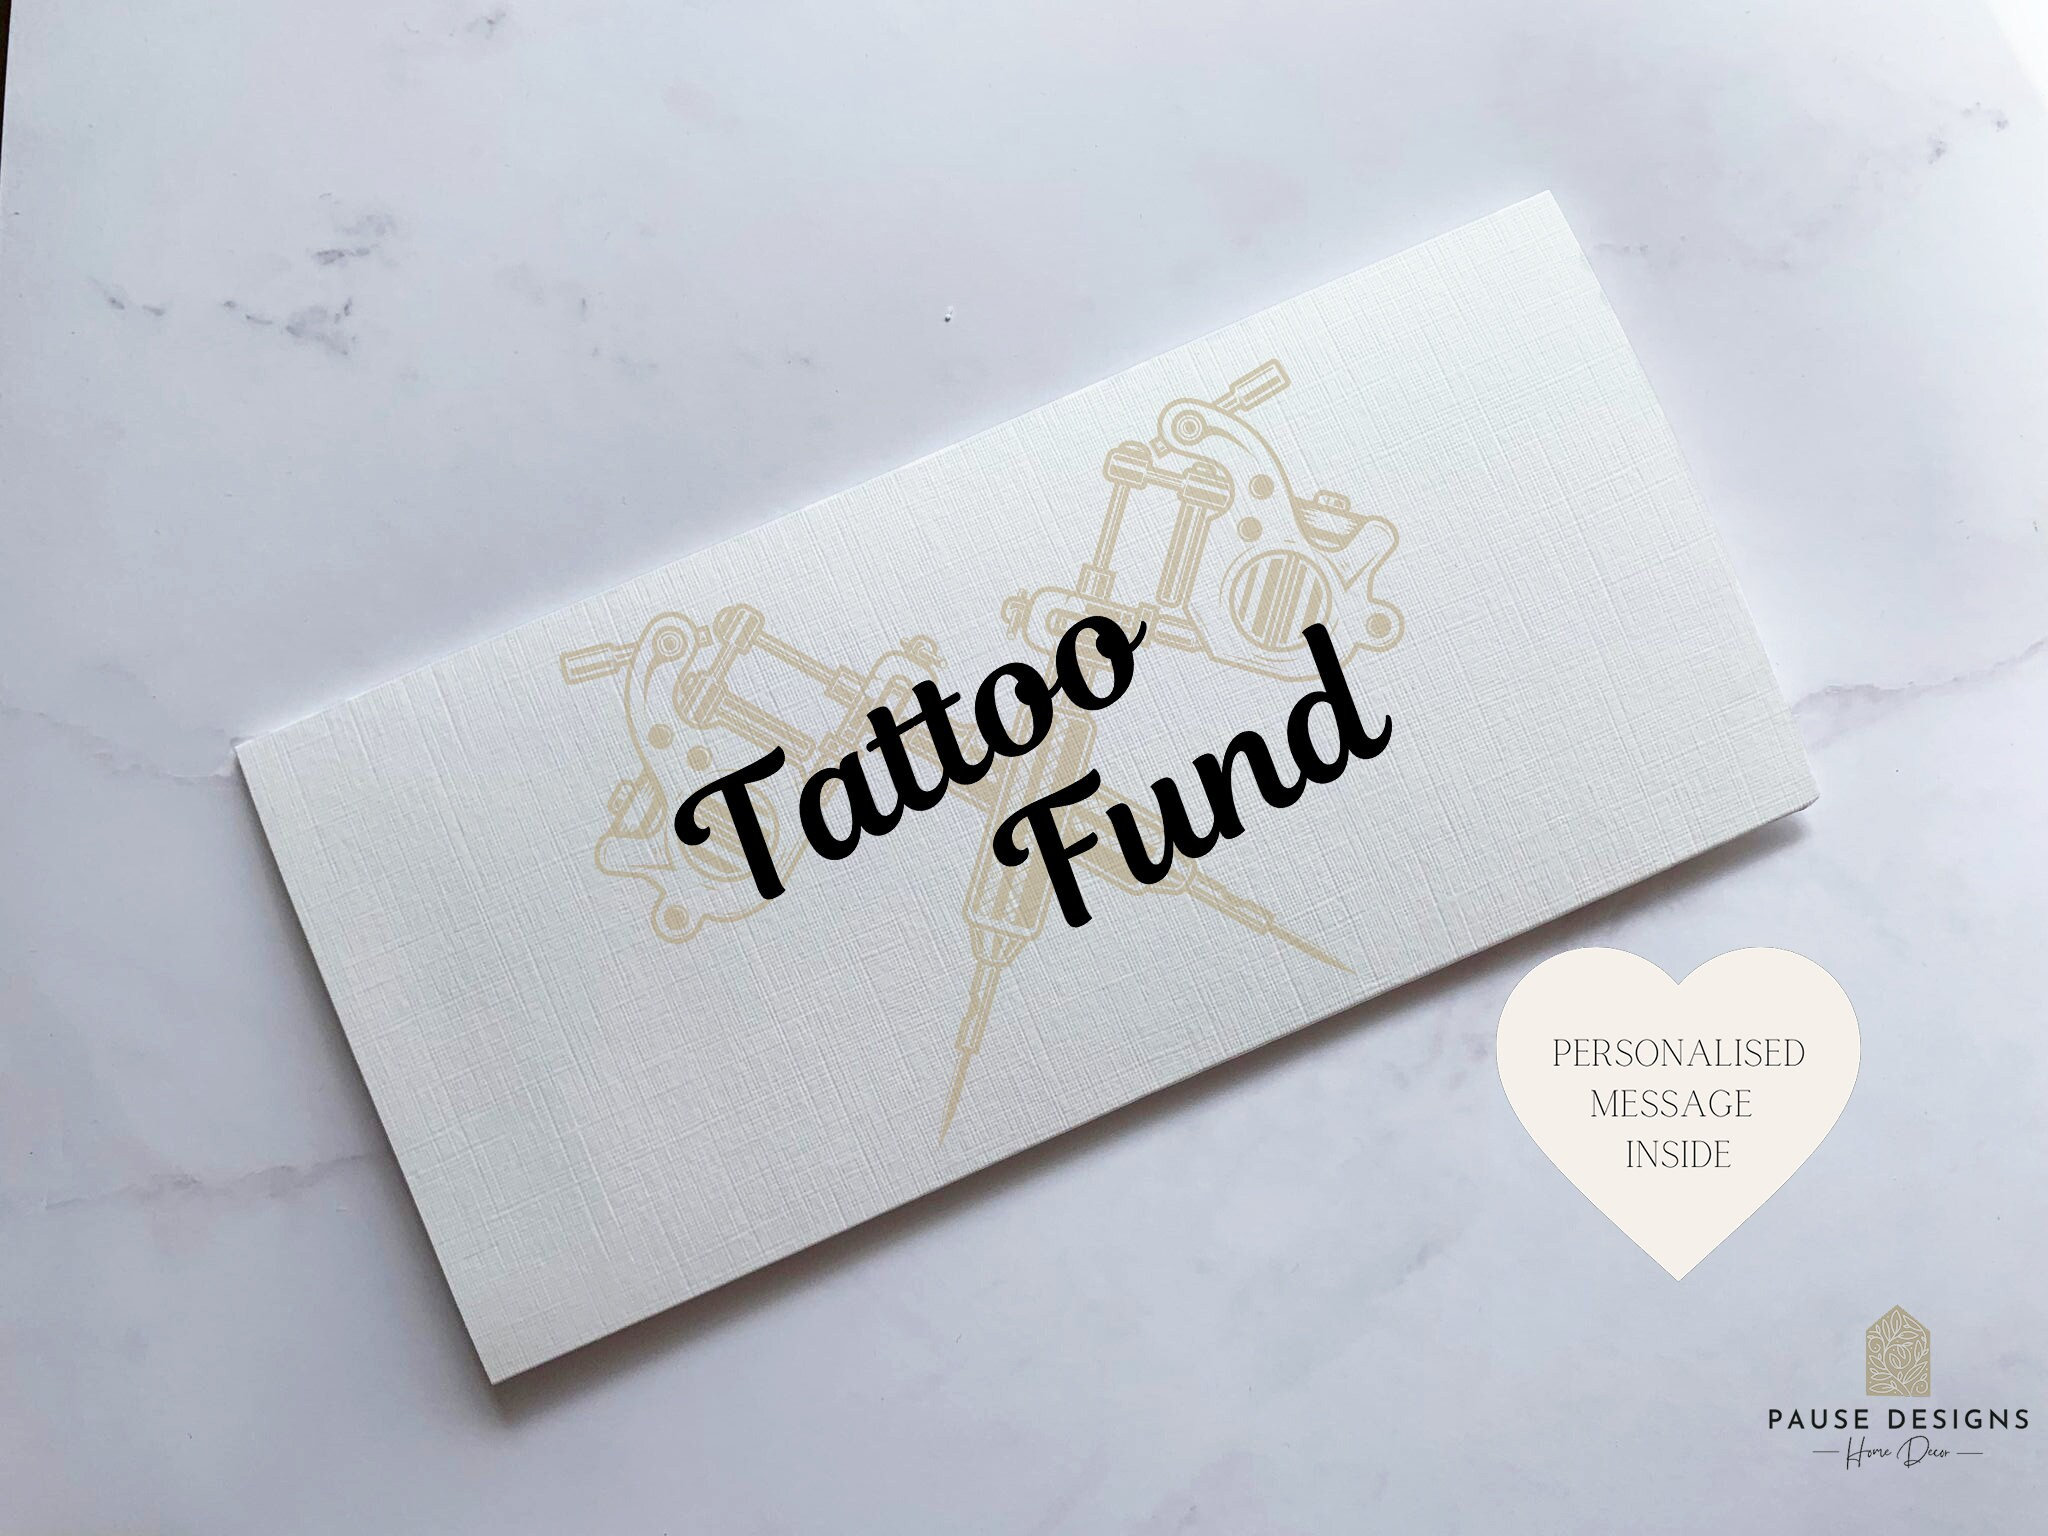 Cottage Creek Tattoo Piggy Bank, Tattoo Money Jar, Tattoo Gifts for Tattoo  Artists, Tattoo Tip Jar 